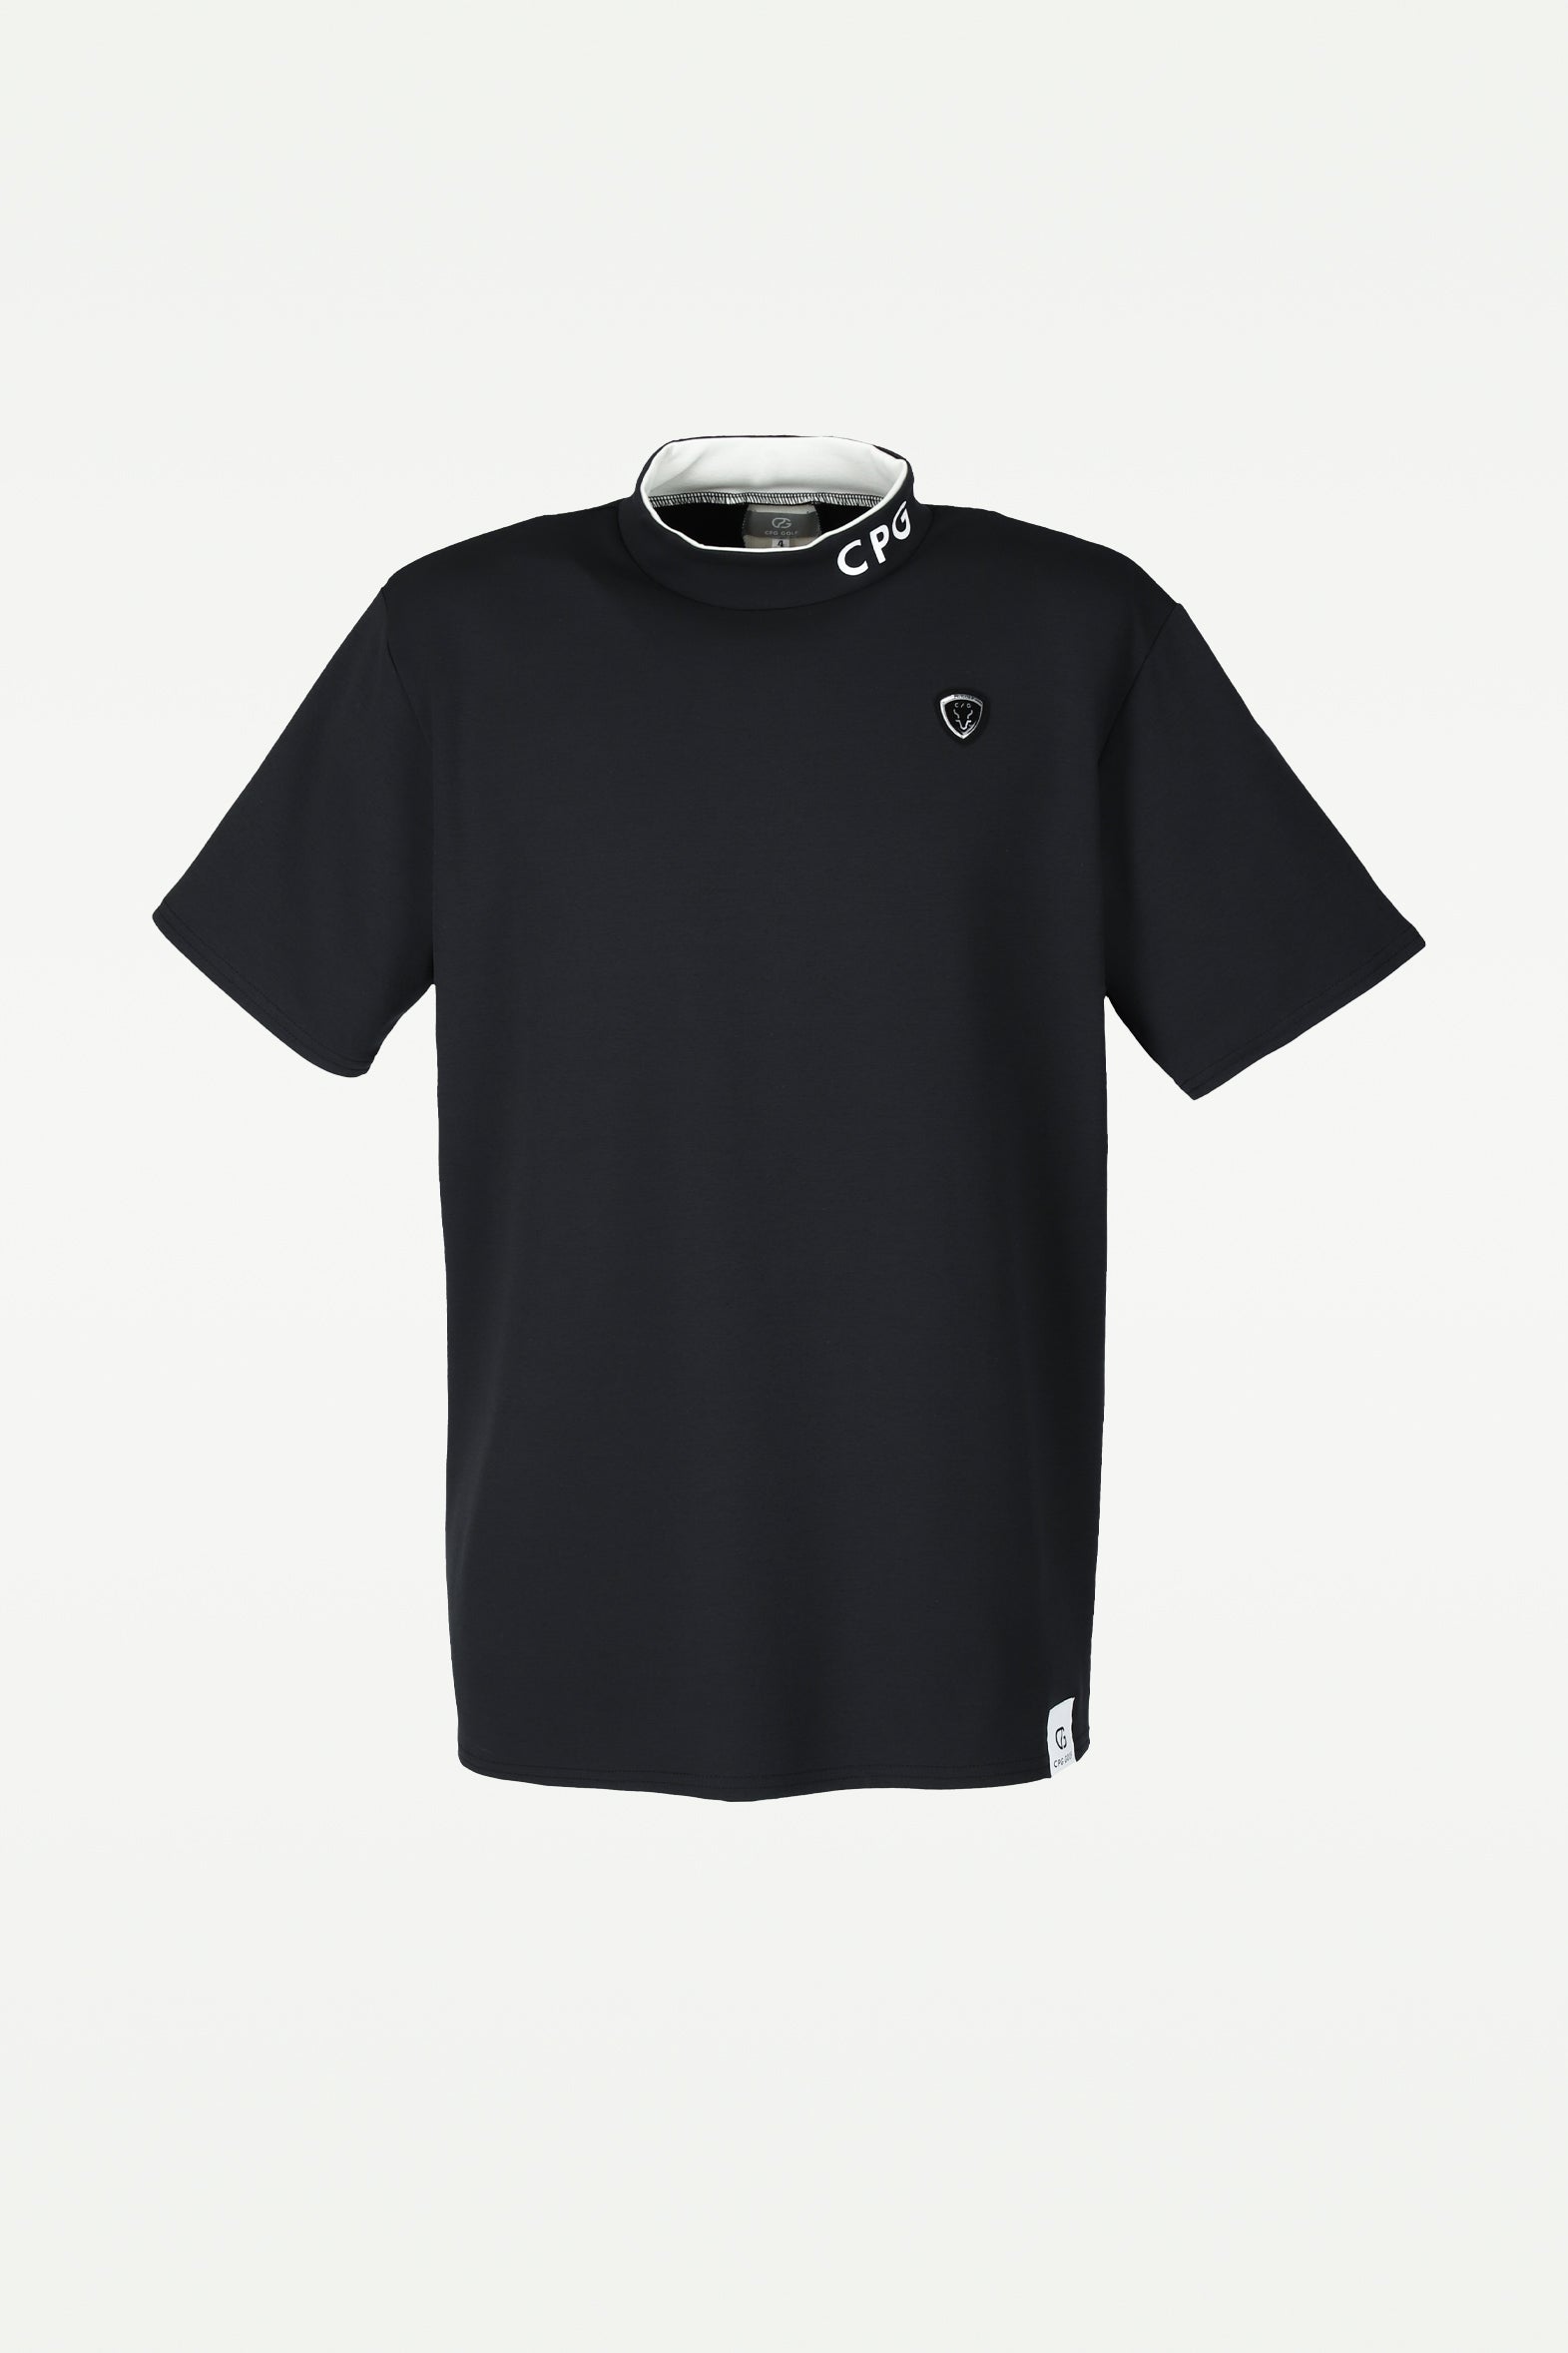 CPG GOLF シーピージーゴルフ ゴルフウェア メンズ 半袖 Tシャツ 